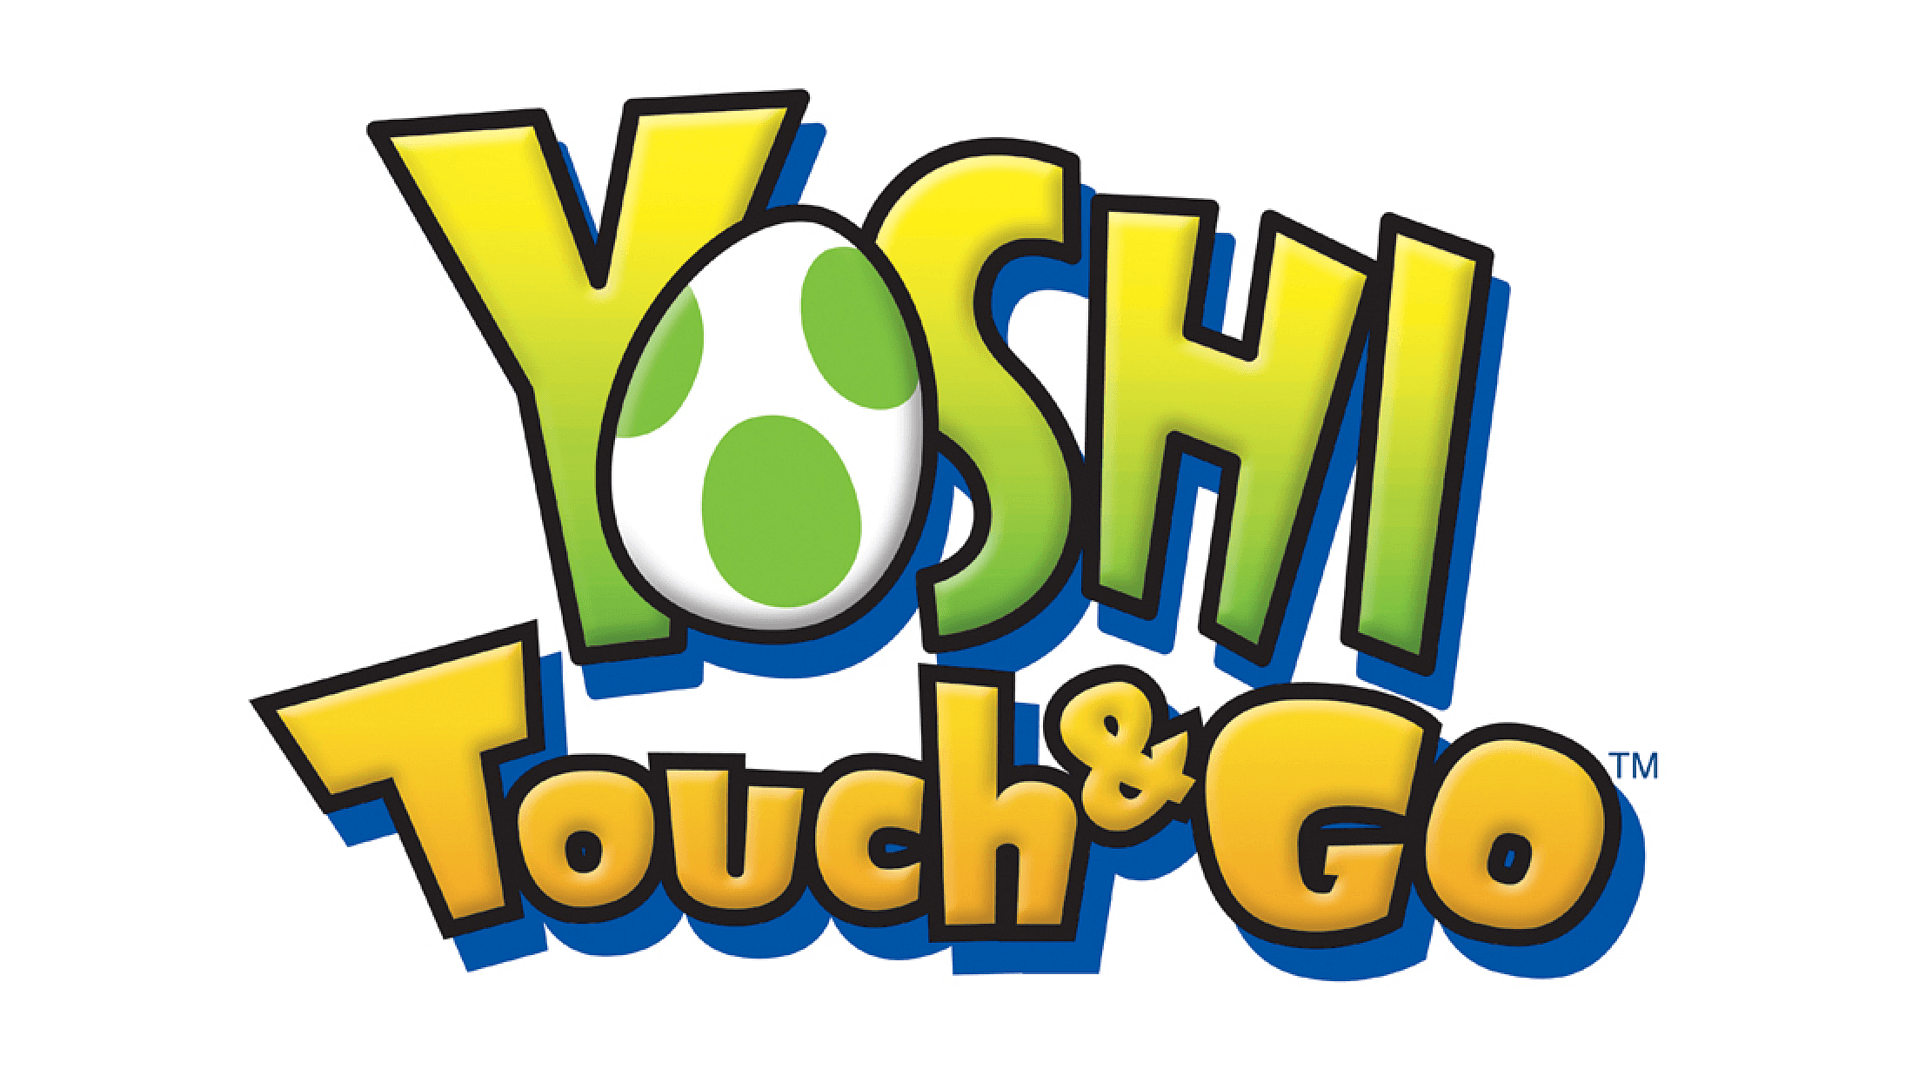 Yoshi Logo - Yoshi Touch & Go